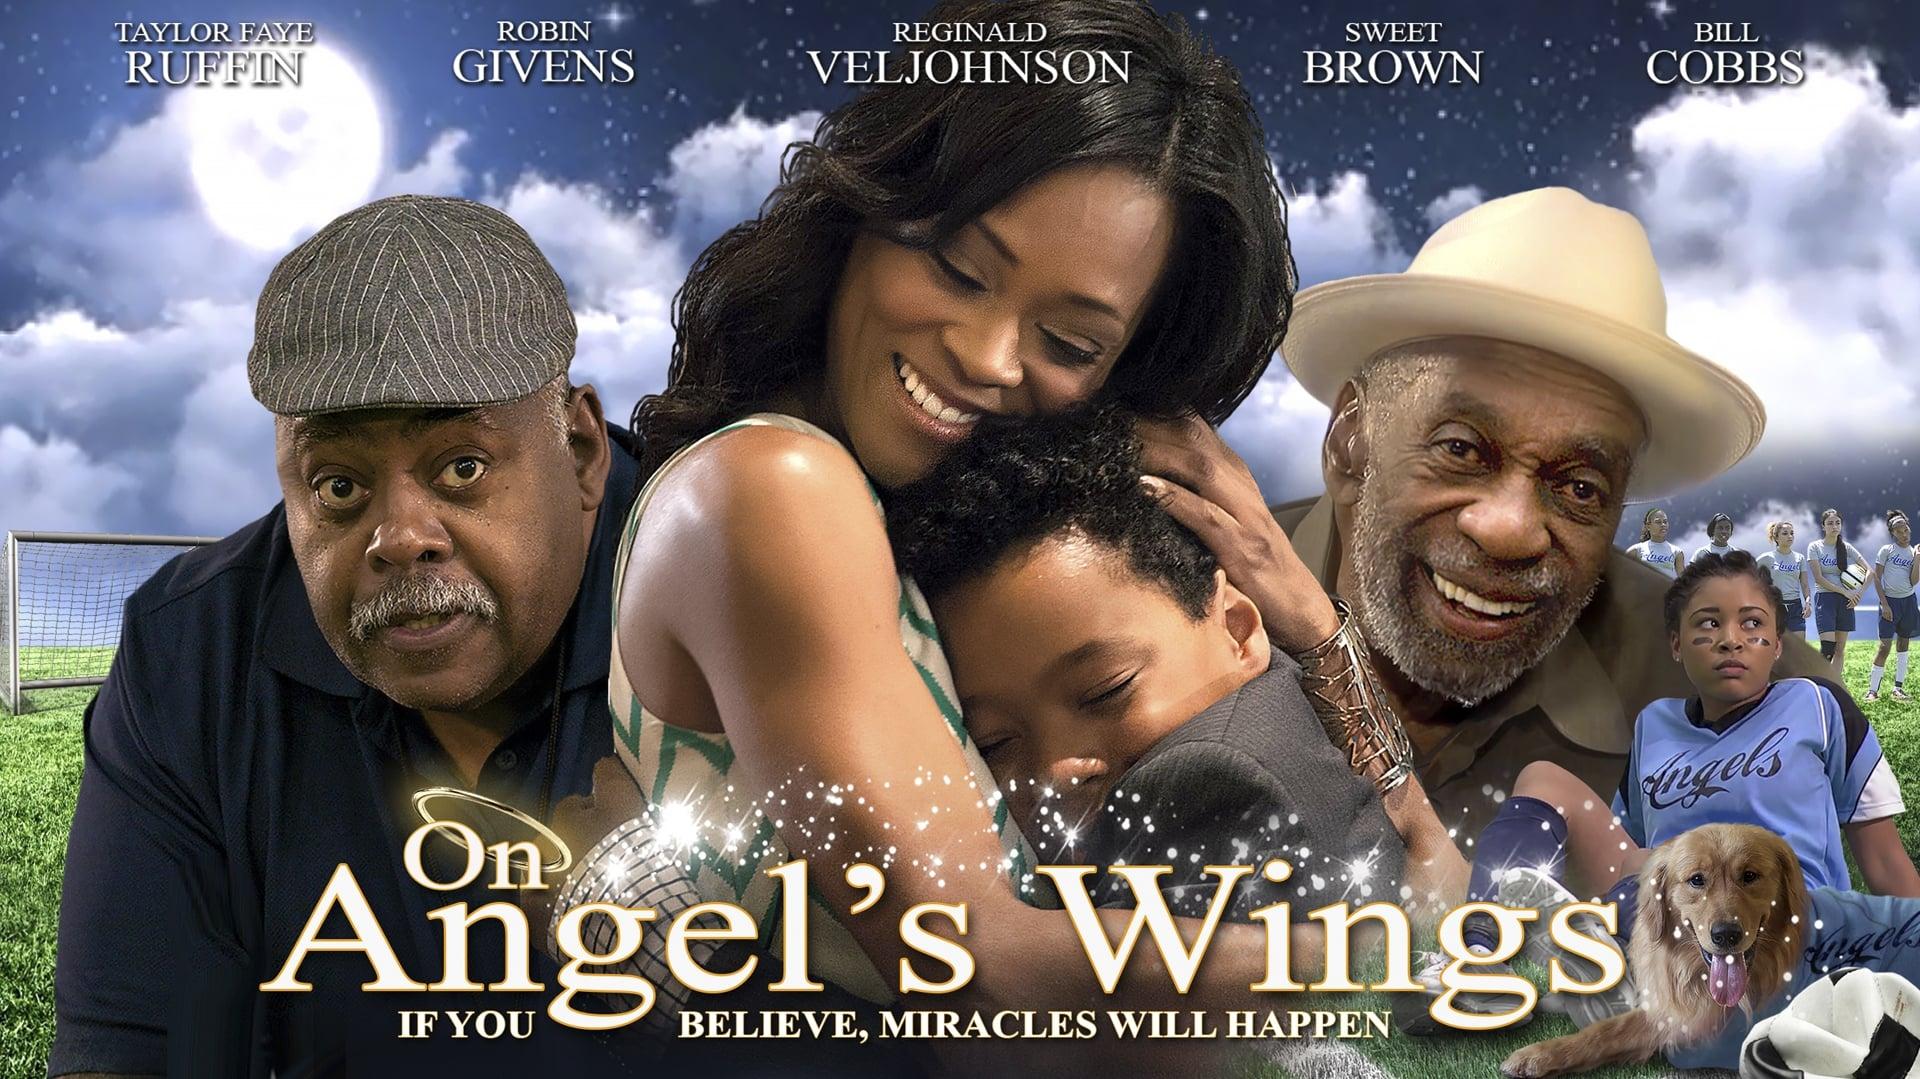 On Angel's Wings backdrop